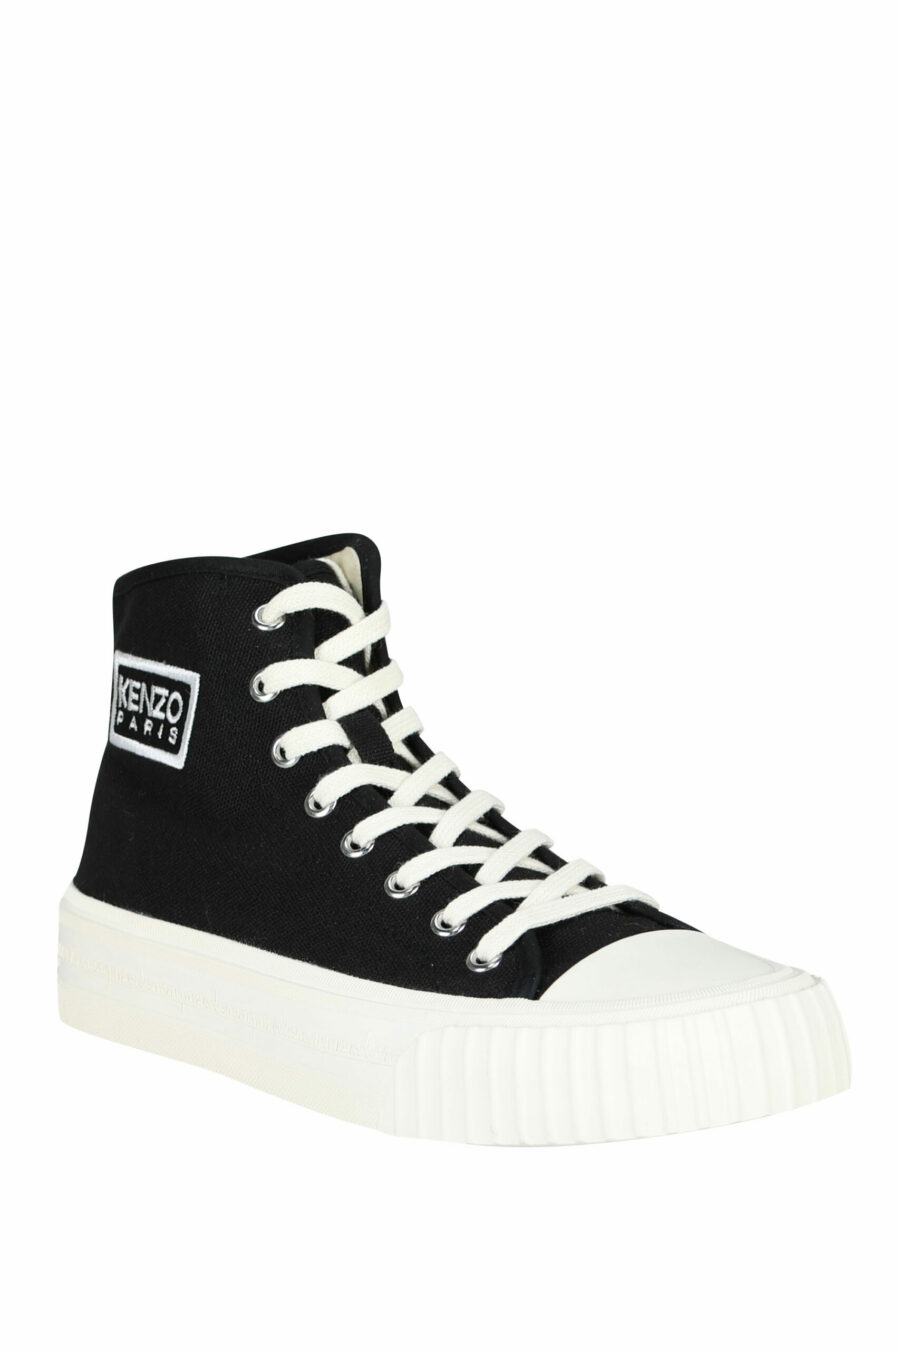 Zapatillas negras altas con logo "kenzo foxy" con logo "tag" - 3612230640009 1 scaled